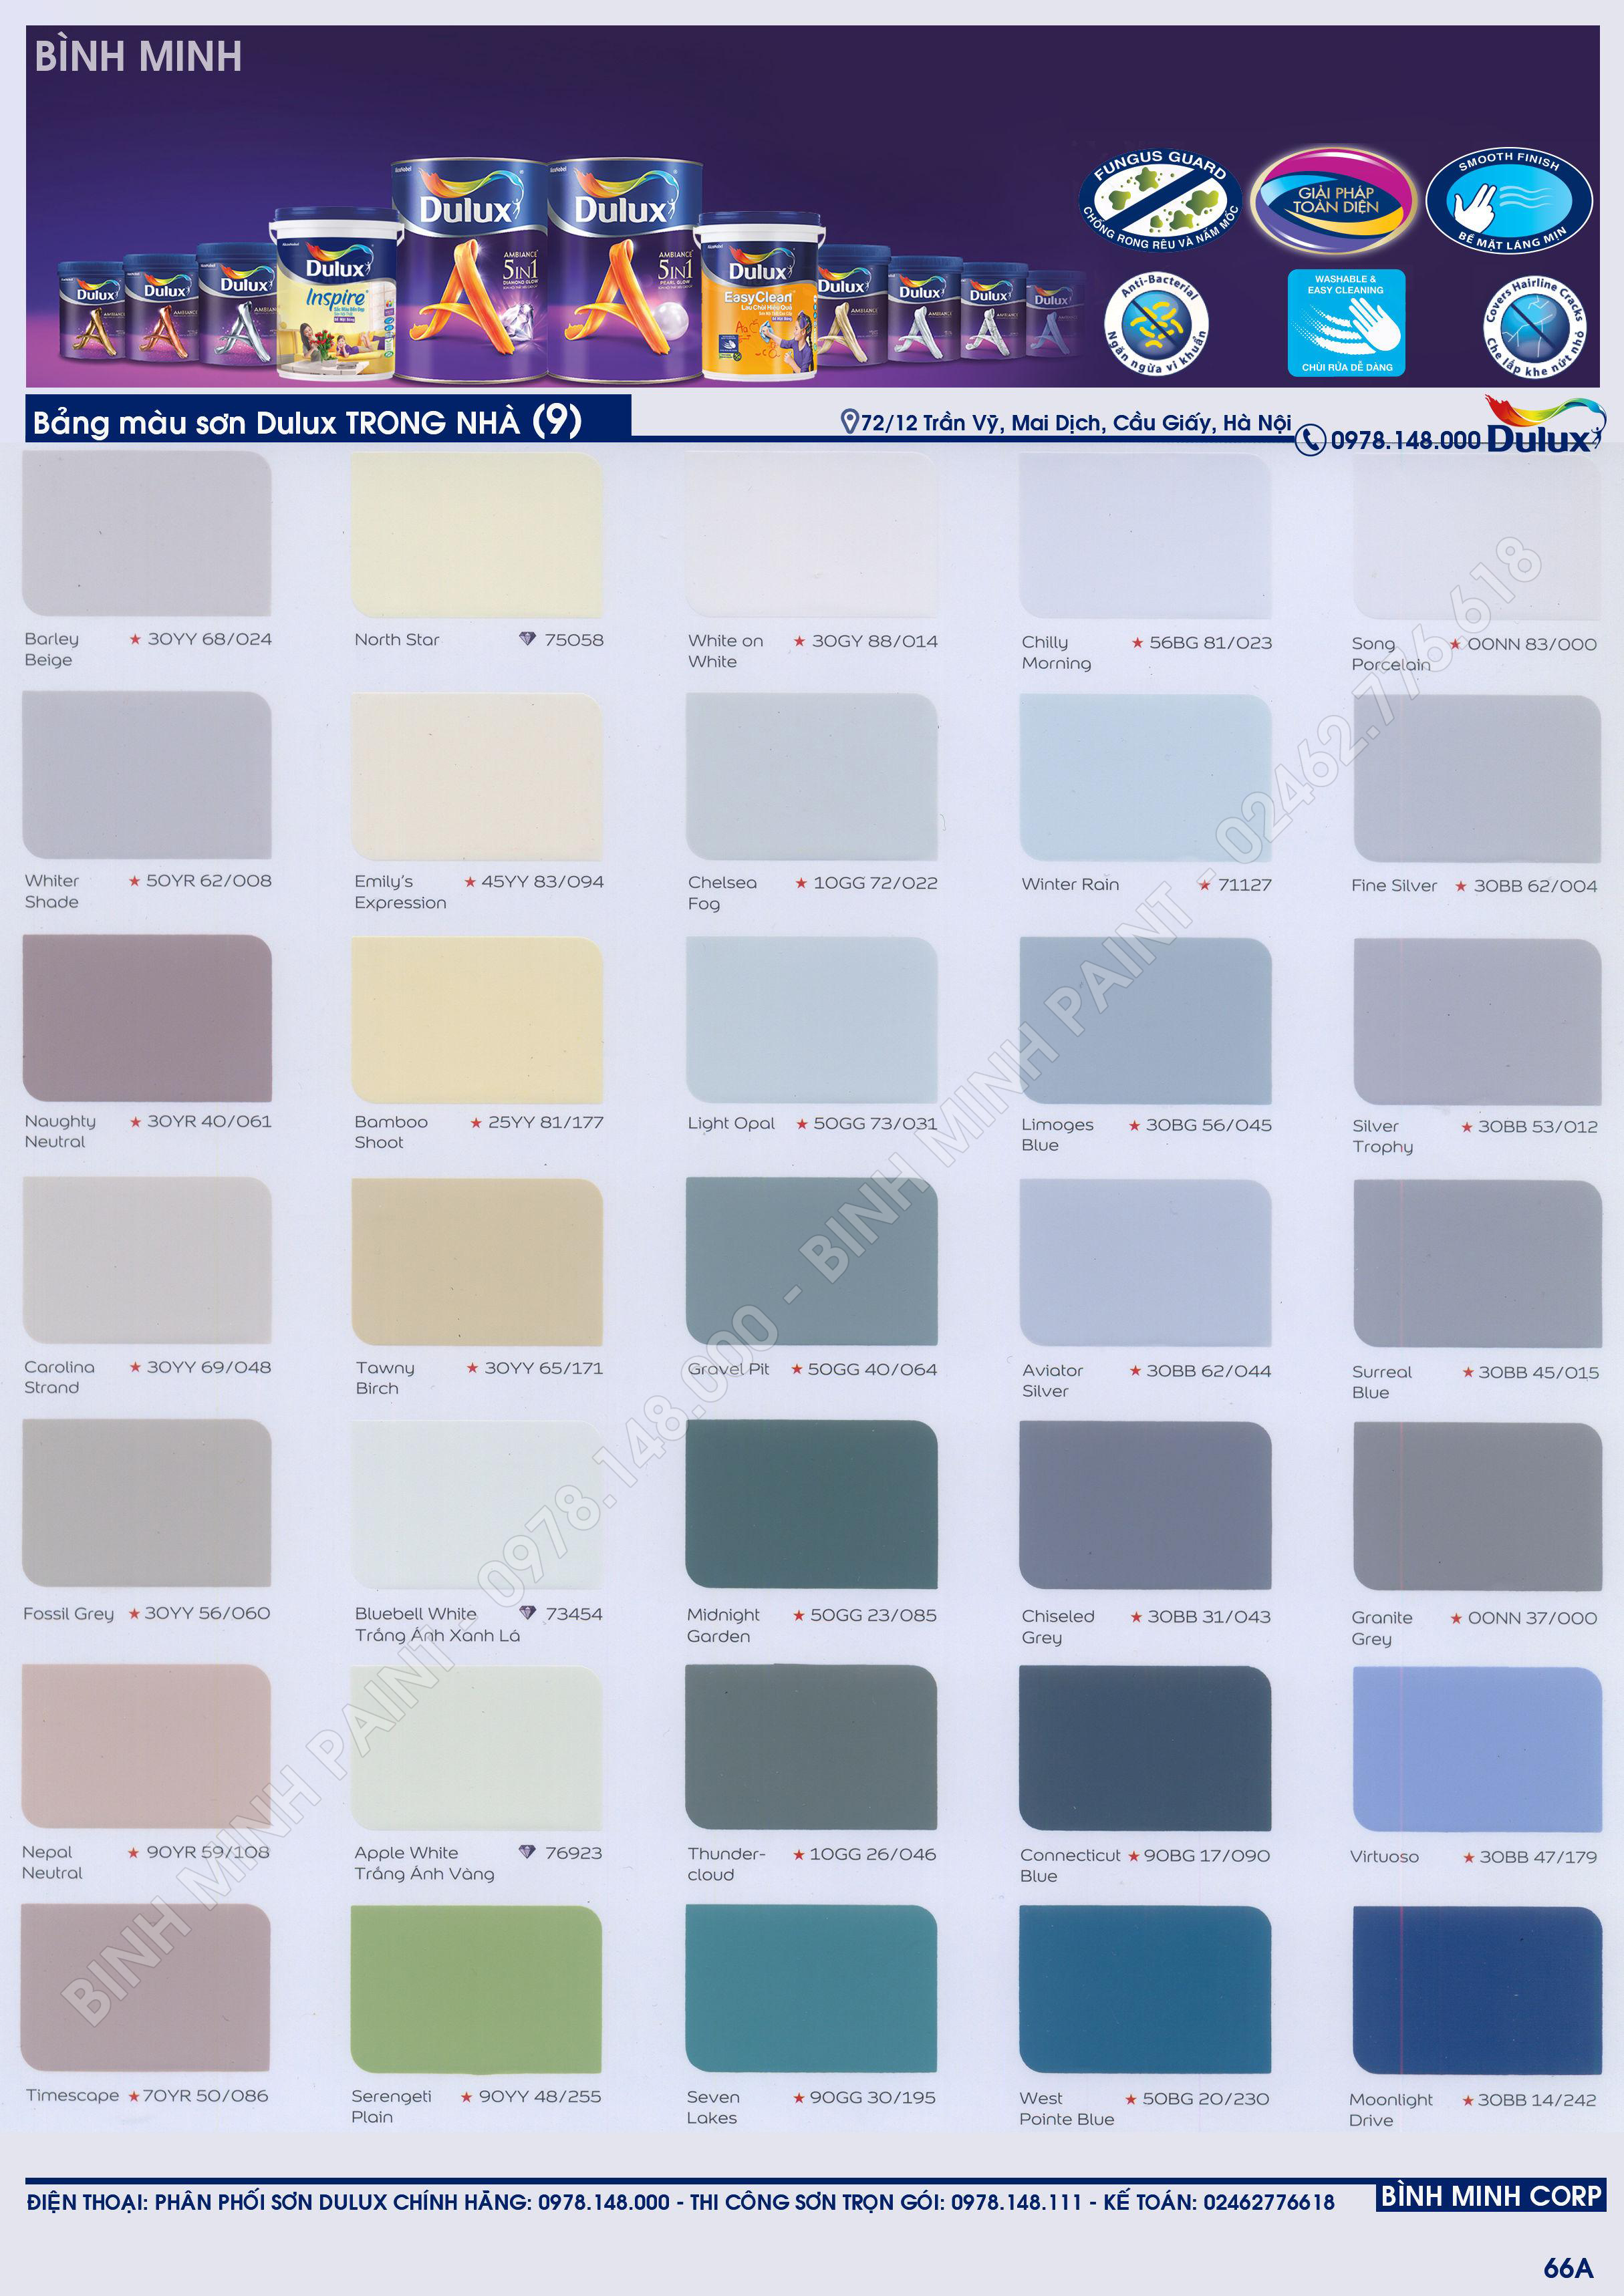 Tra cứu bảng màu sơn Dulux: Tra cứu bảng màu sơn Dulux để tìm kiếm và lựa chọn gam màu hoàn hảo cho các dự án của bạn. Đây là một công cụ hữu ích để bạn thu thập ý tưởng và tạo ra một không gian sống trang nhã và đa dạng.